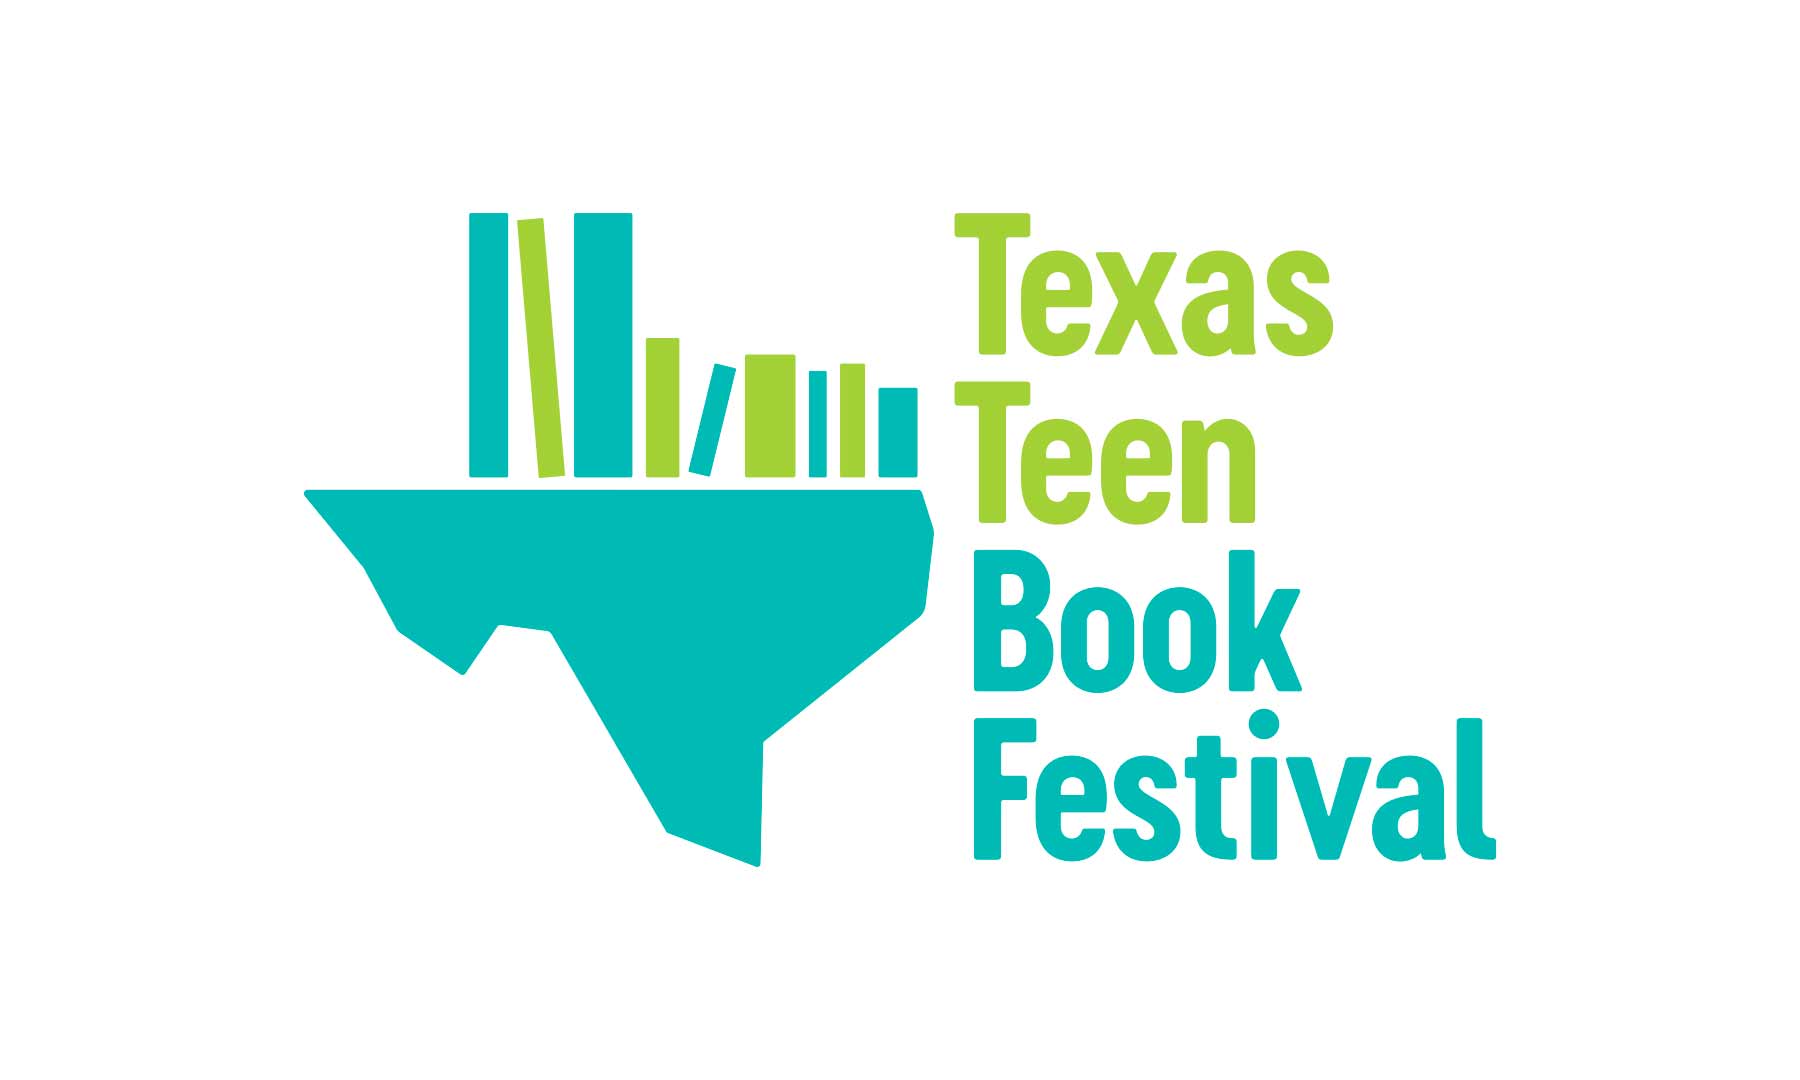 Texas Teen Book Festival